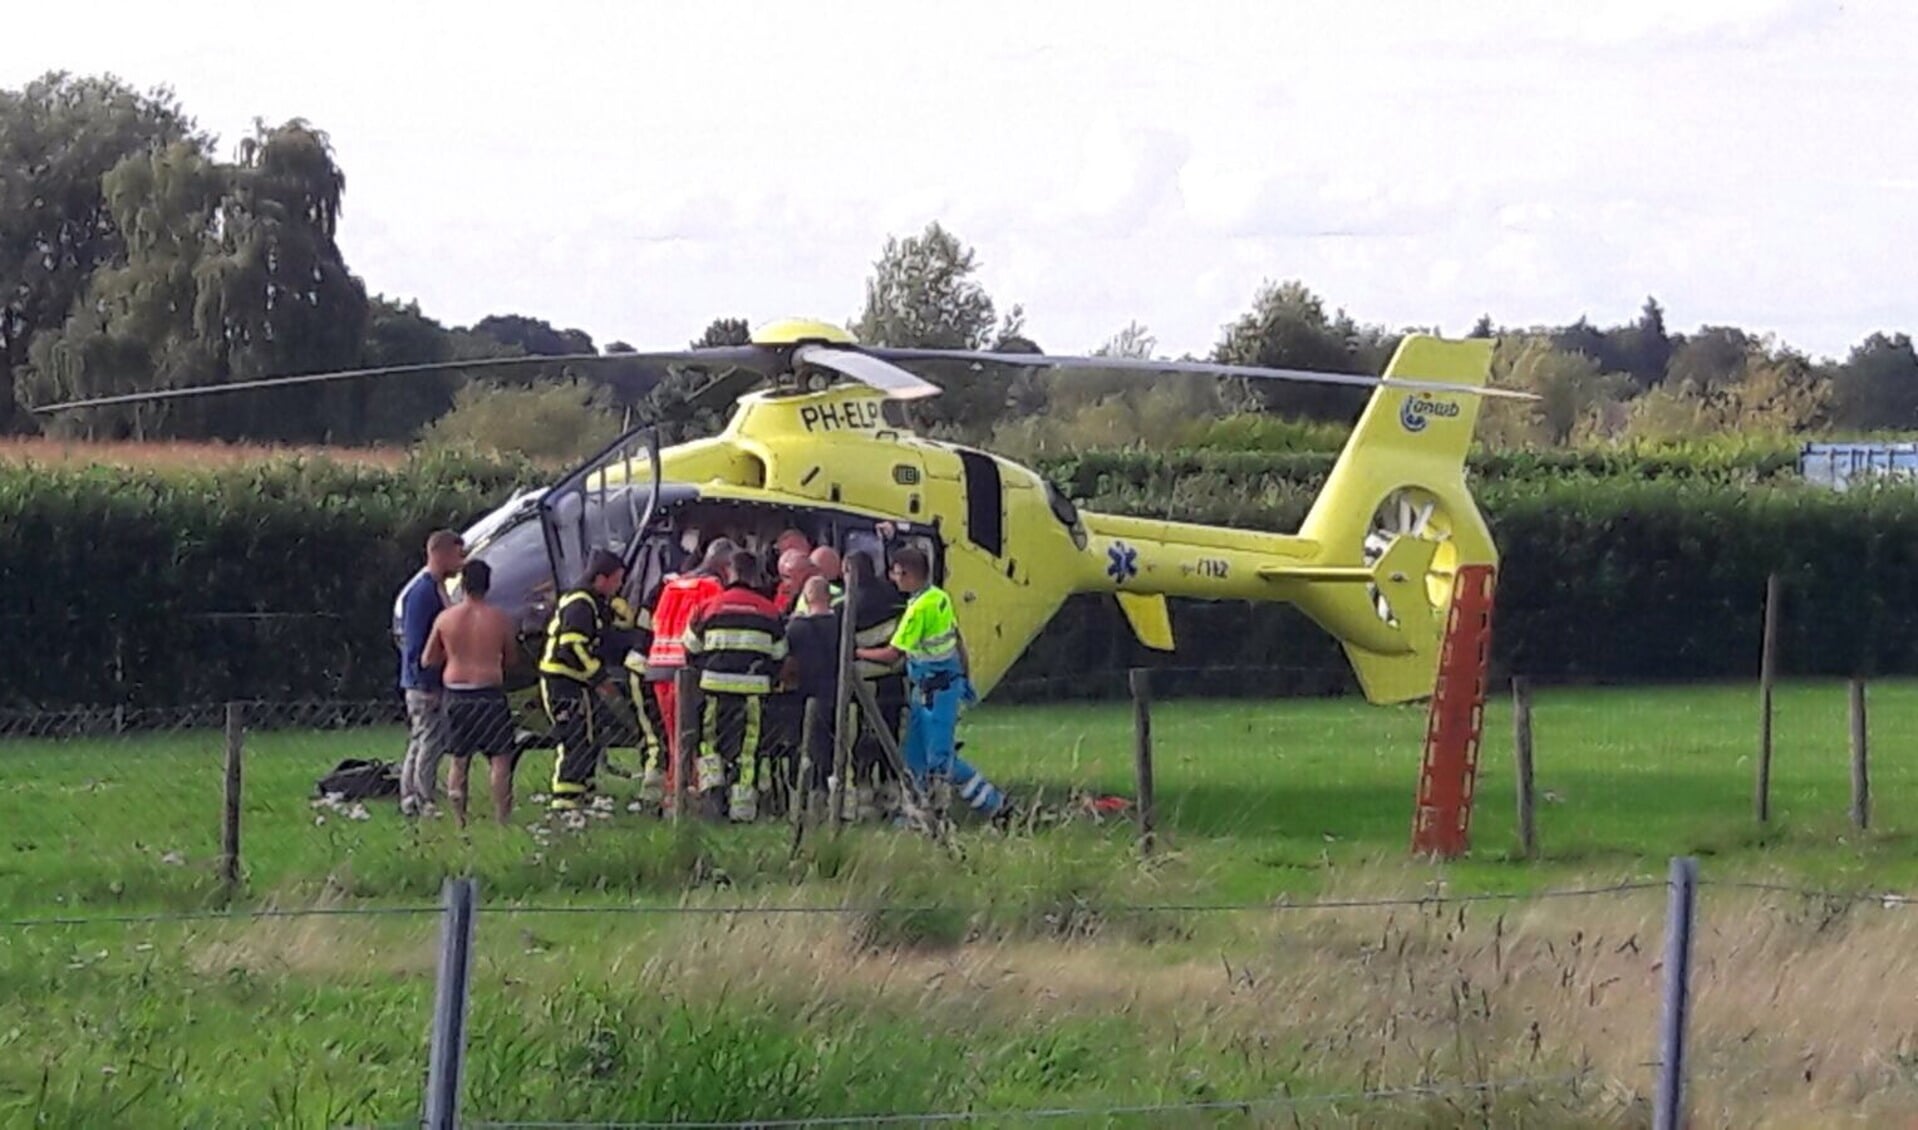 De traumahelikopter rukte uit naar een ongeval met een jetski op de Maas in Blitterswijck. Foto: Audica Video. 